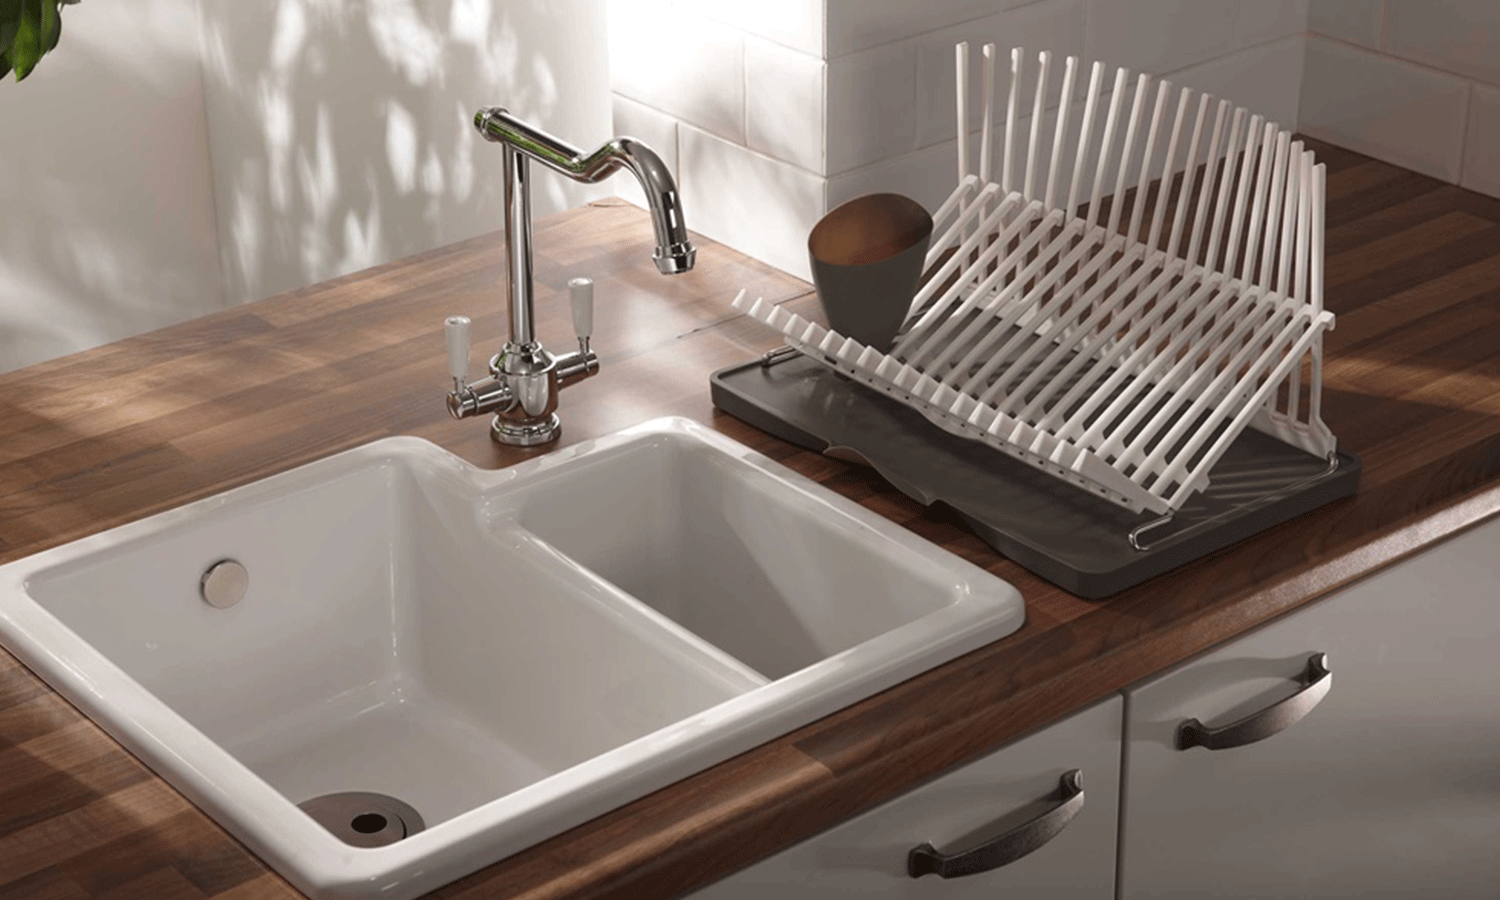 تمیز کردن سینک ظرفشویی بدون استفاده از مواد شیمیایی | با این روش‌های خانگی سینک را براق و تمیز کنید | ترفندهایی برای شستن سینک چینی